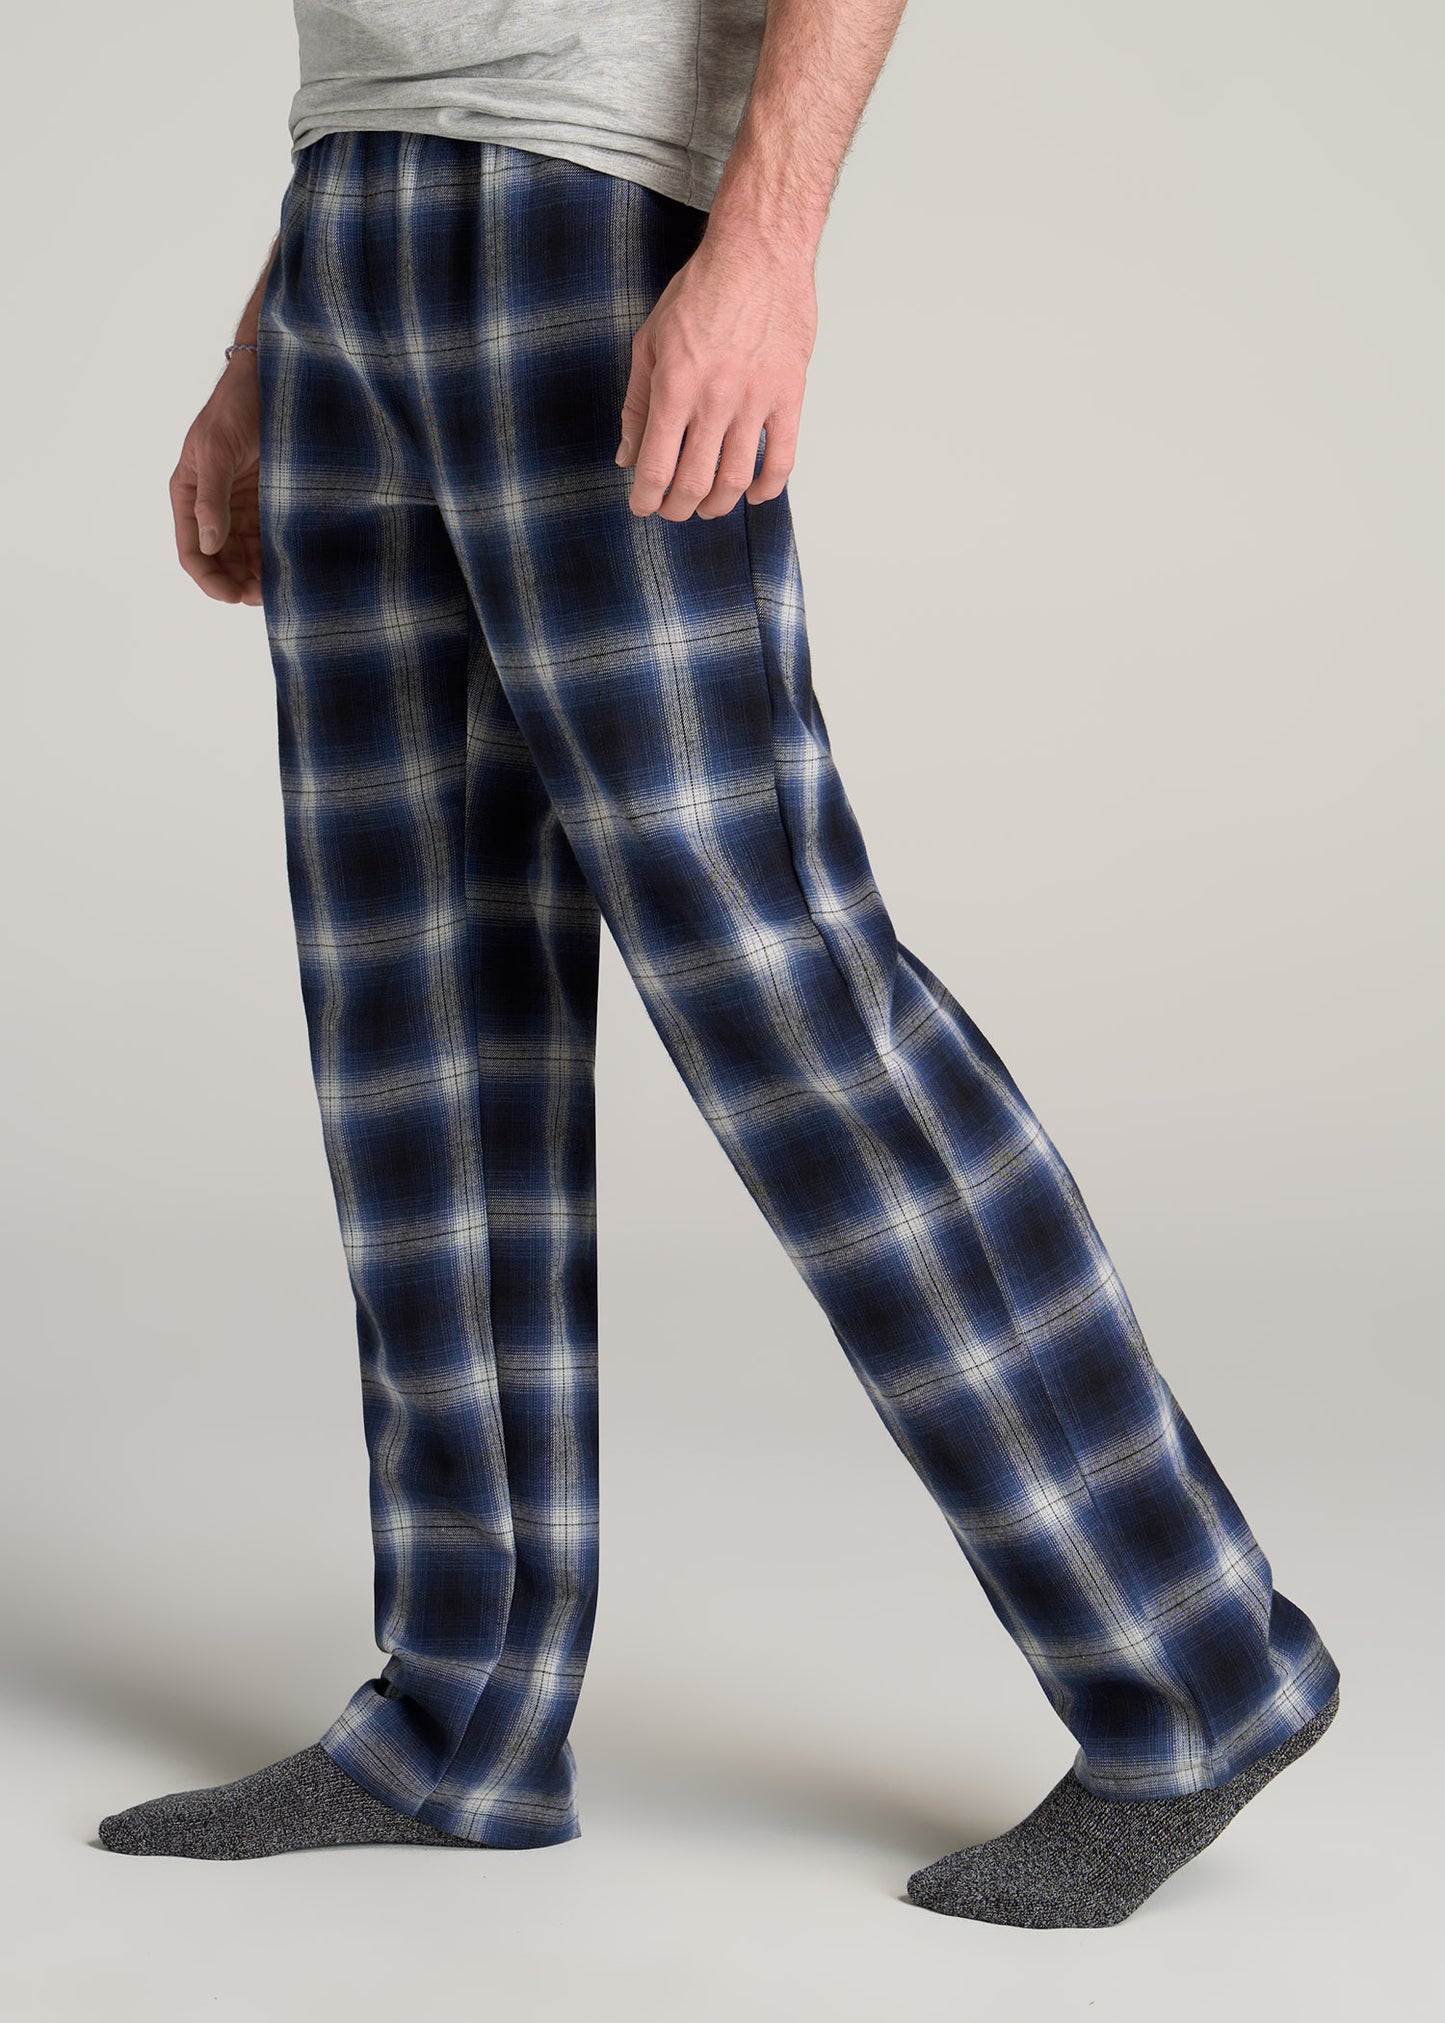 American-Tall-Men-Plaid-Pajama-Pants-Blue-Grey-Plaid-side